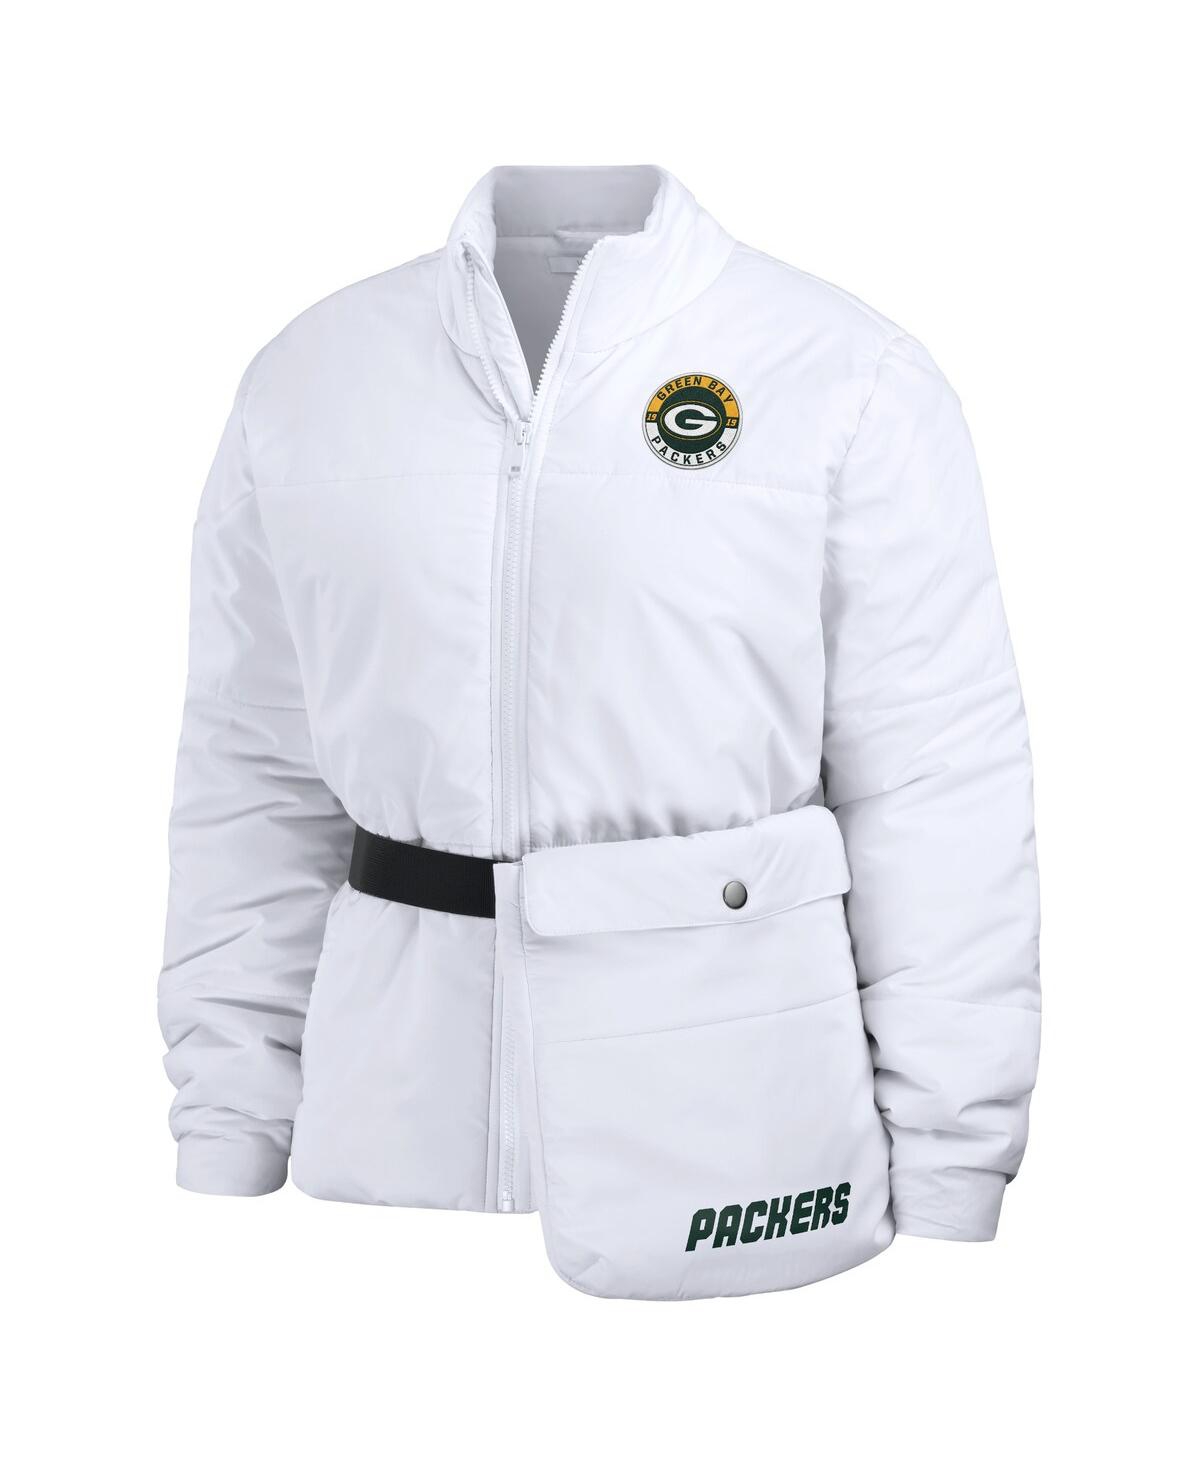 Shop Wear By Erin Andrews Women's  White Green Bay Packers Packaway Full-zip Puffer Jacket